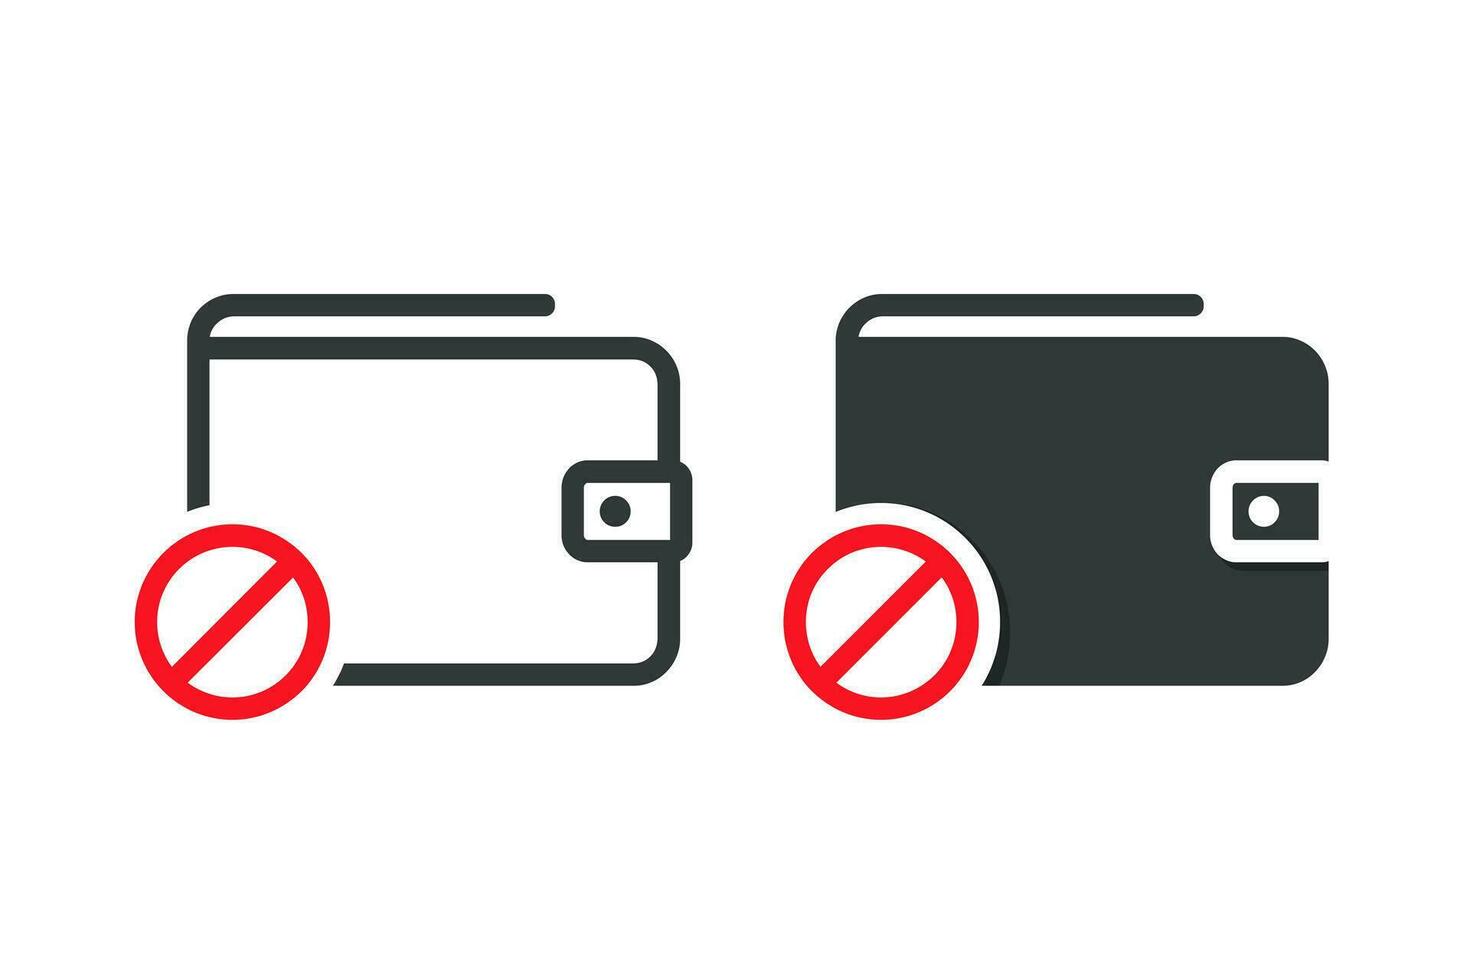 Wallet warning icon. Illustration vector